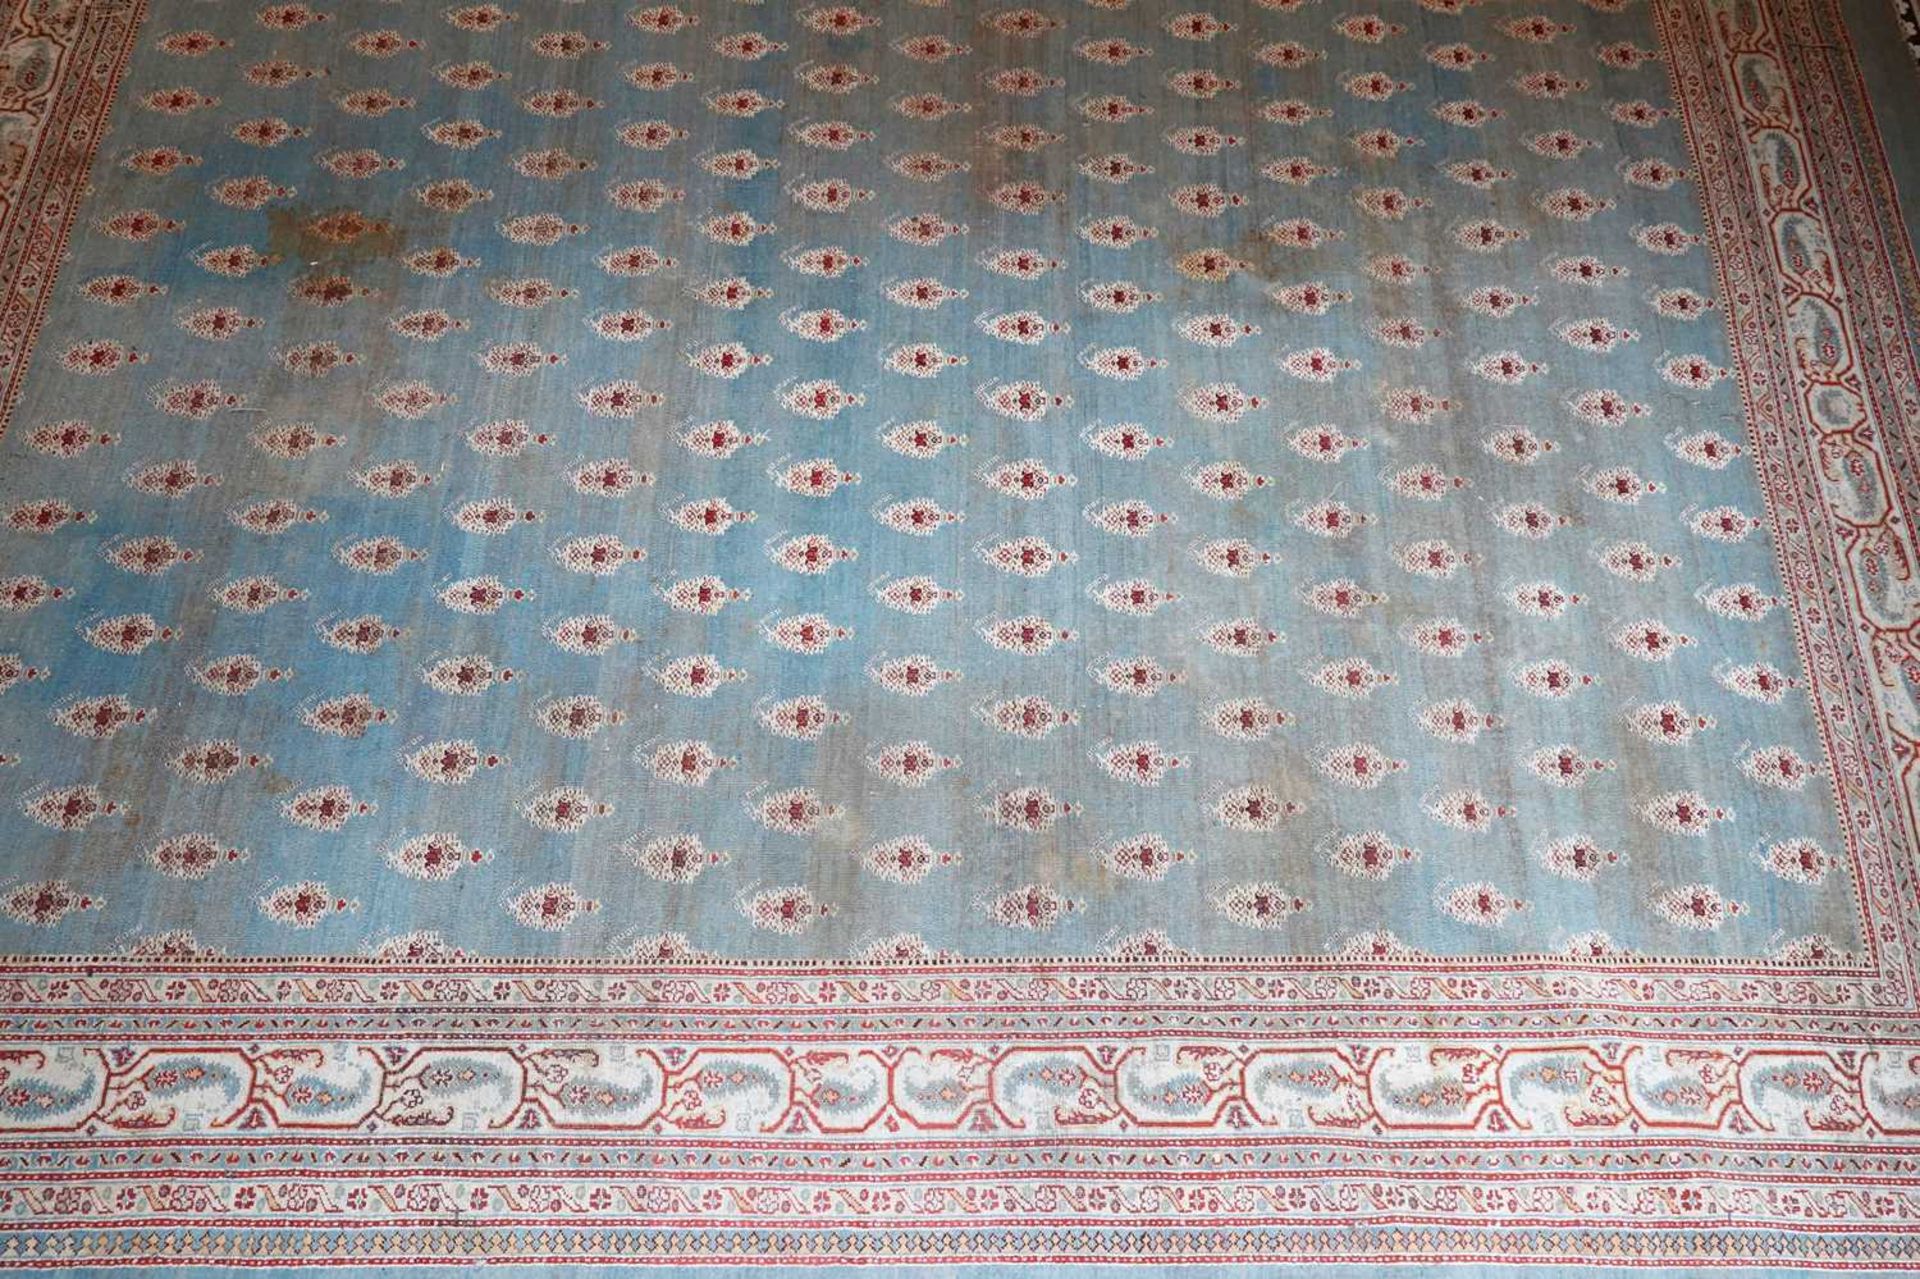 ☘ A large blue Amritsar carpet, - Image 10 of 38